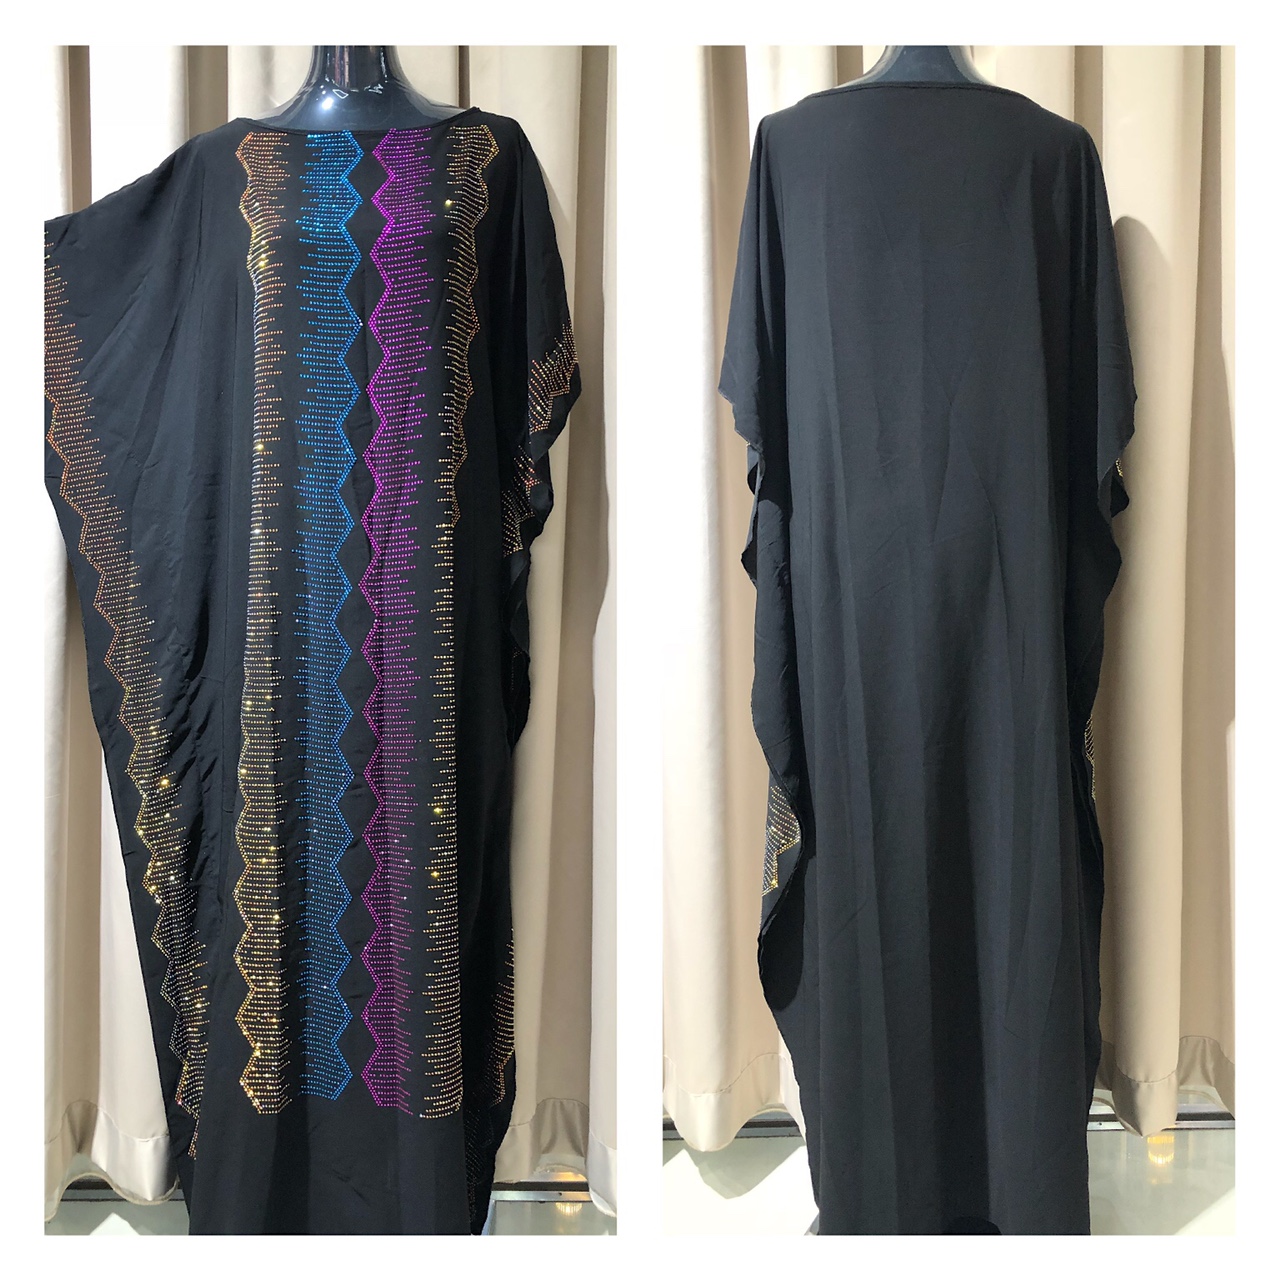 中东迪拜黑色长袍 Abaya黑色长袍 单面烫钻 多色钻 优雅气质款